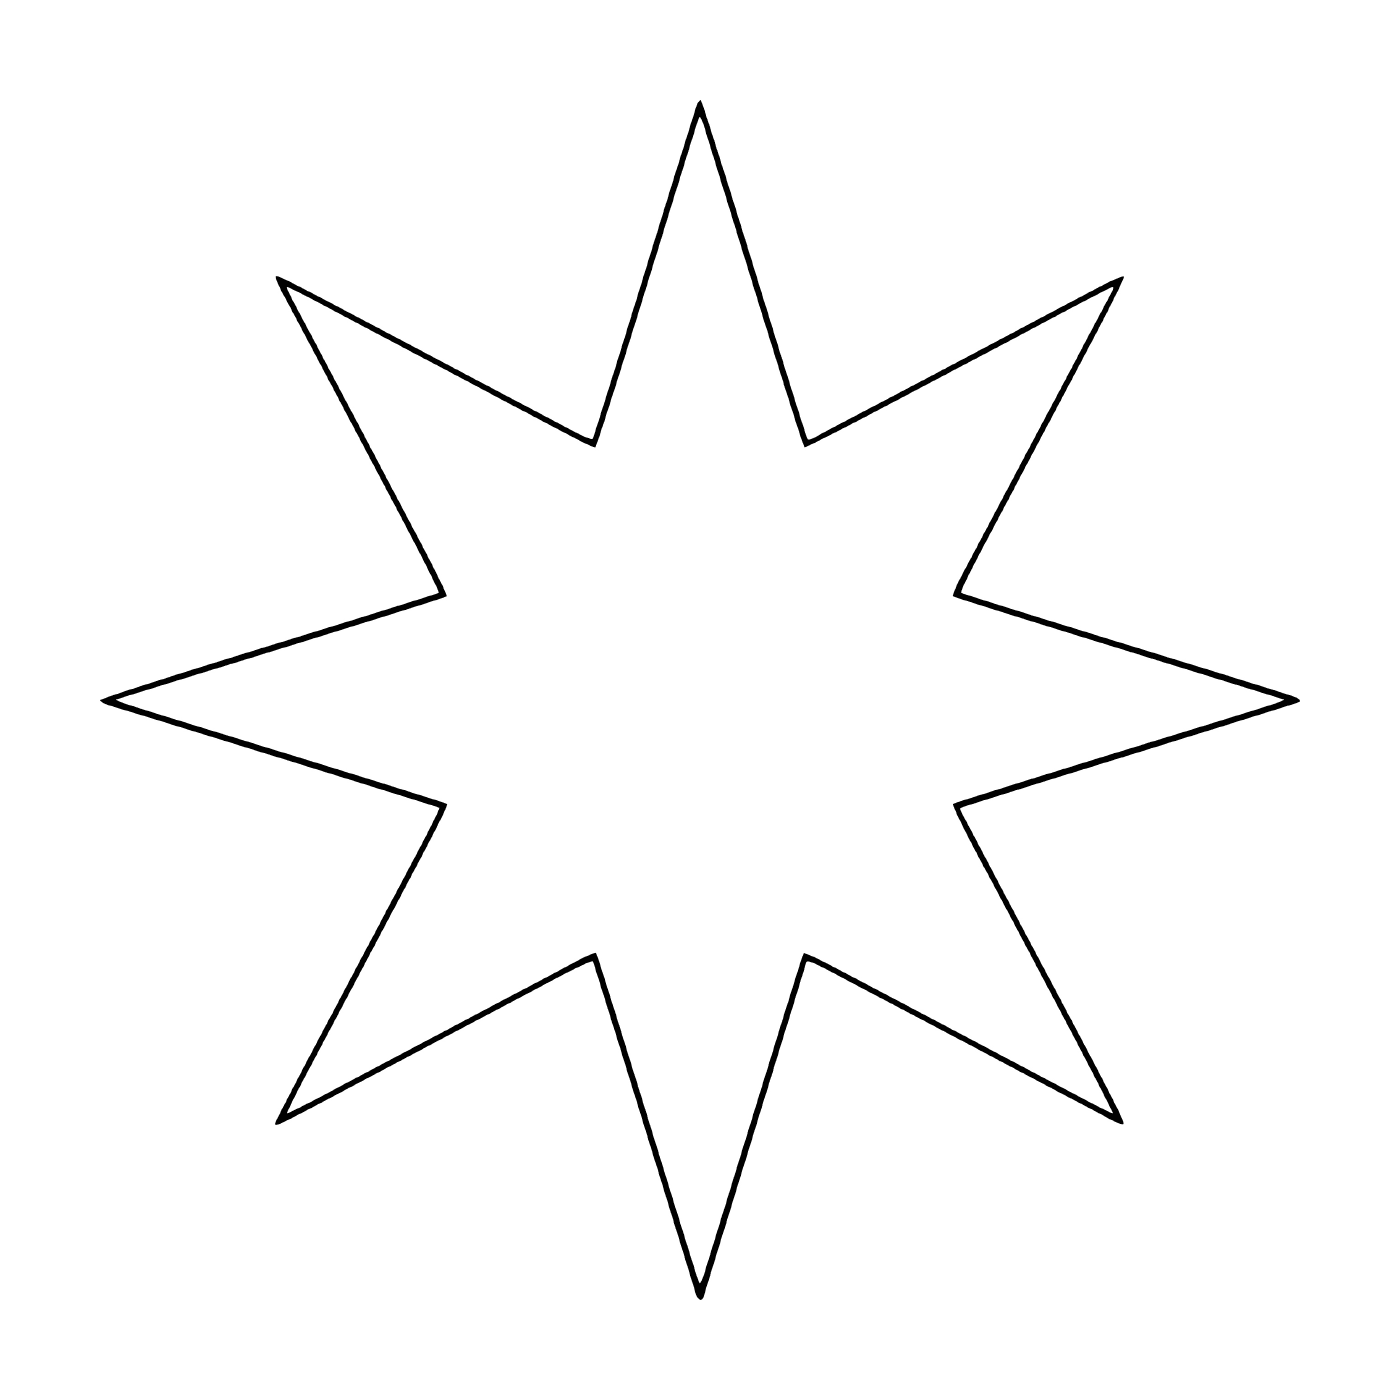  Una estrella con ocho ramas 